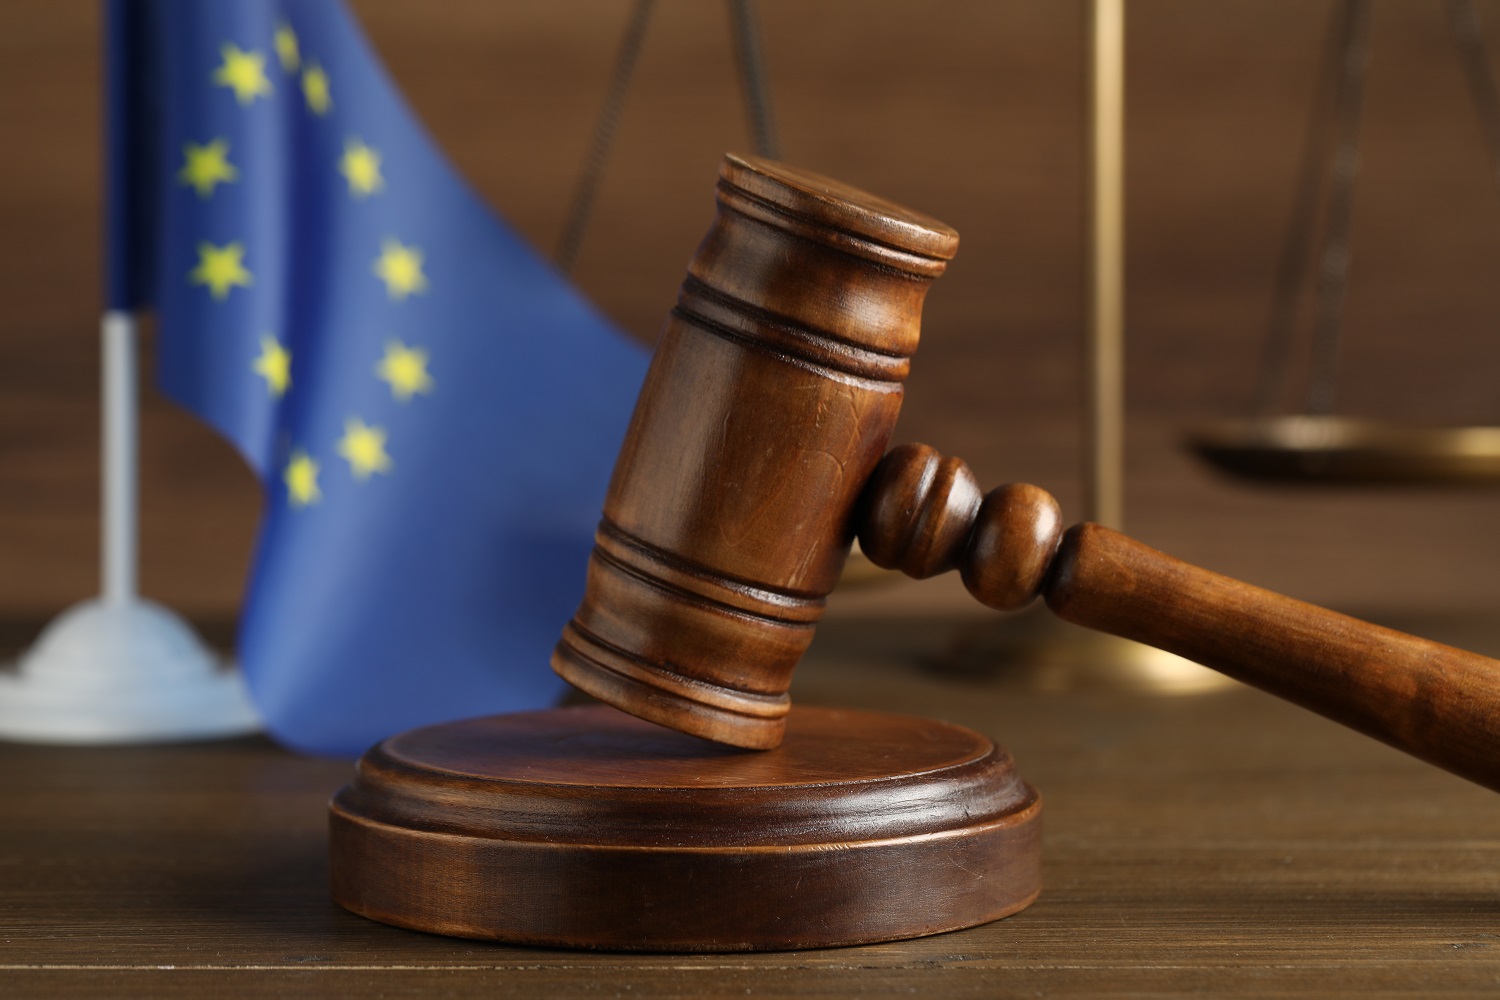 Drewniany blat, na nim sędziowski młotem z podstawką, w tle flaga Unii Europejskiej i waga, symbolizująca sprawiedliwość